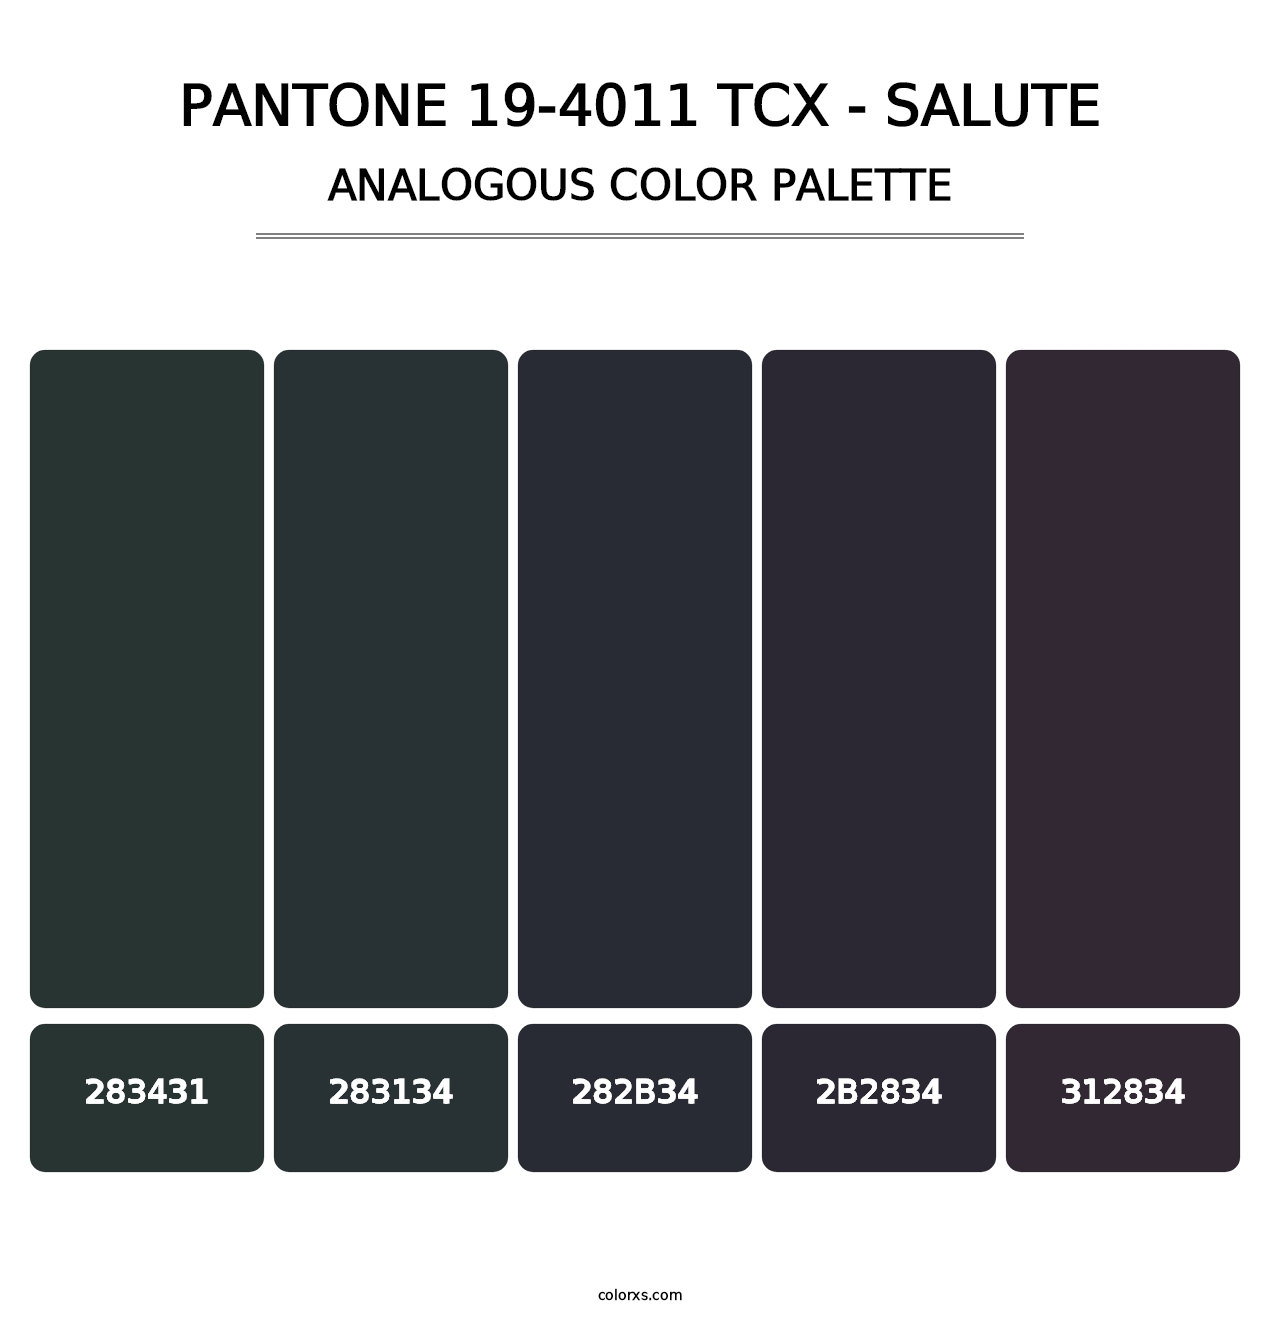 PANTONE 19-4011 TCX - Salute - Analogous Color Palette